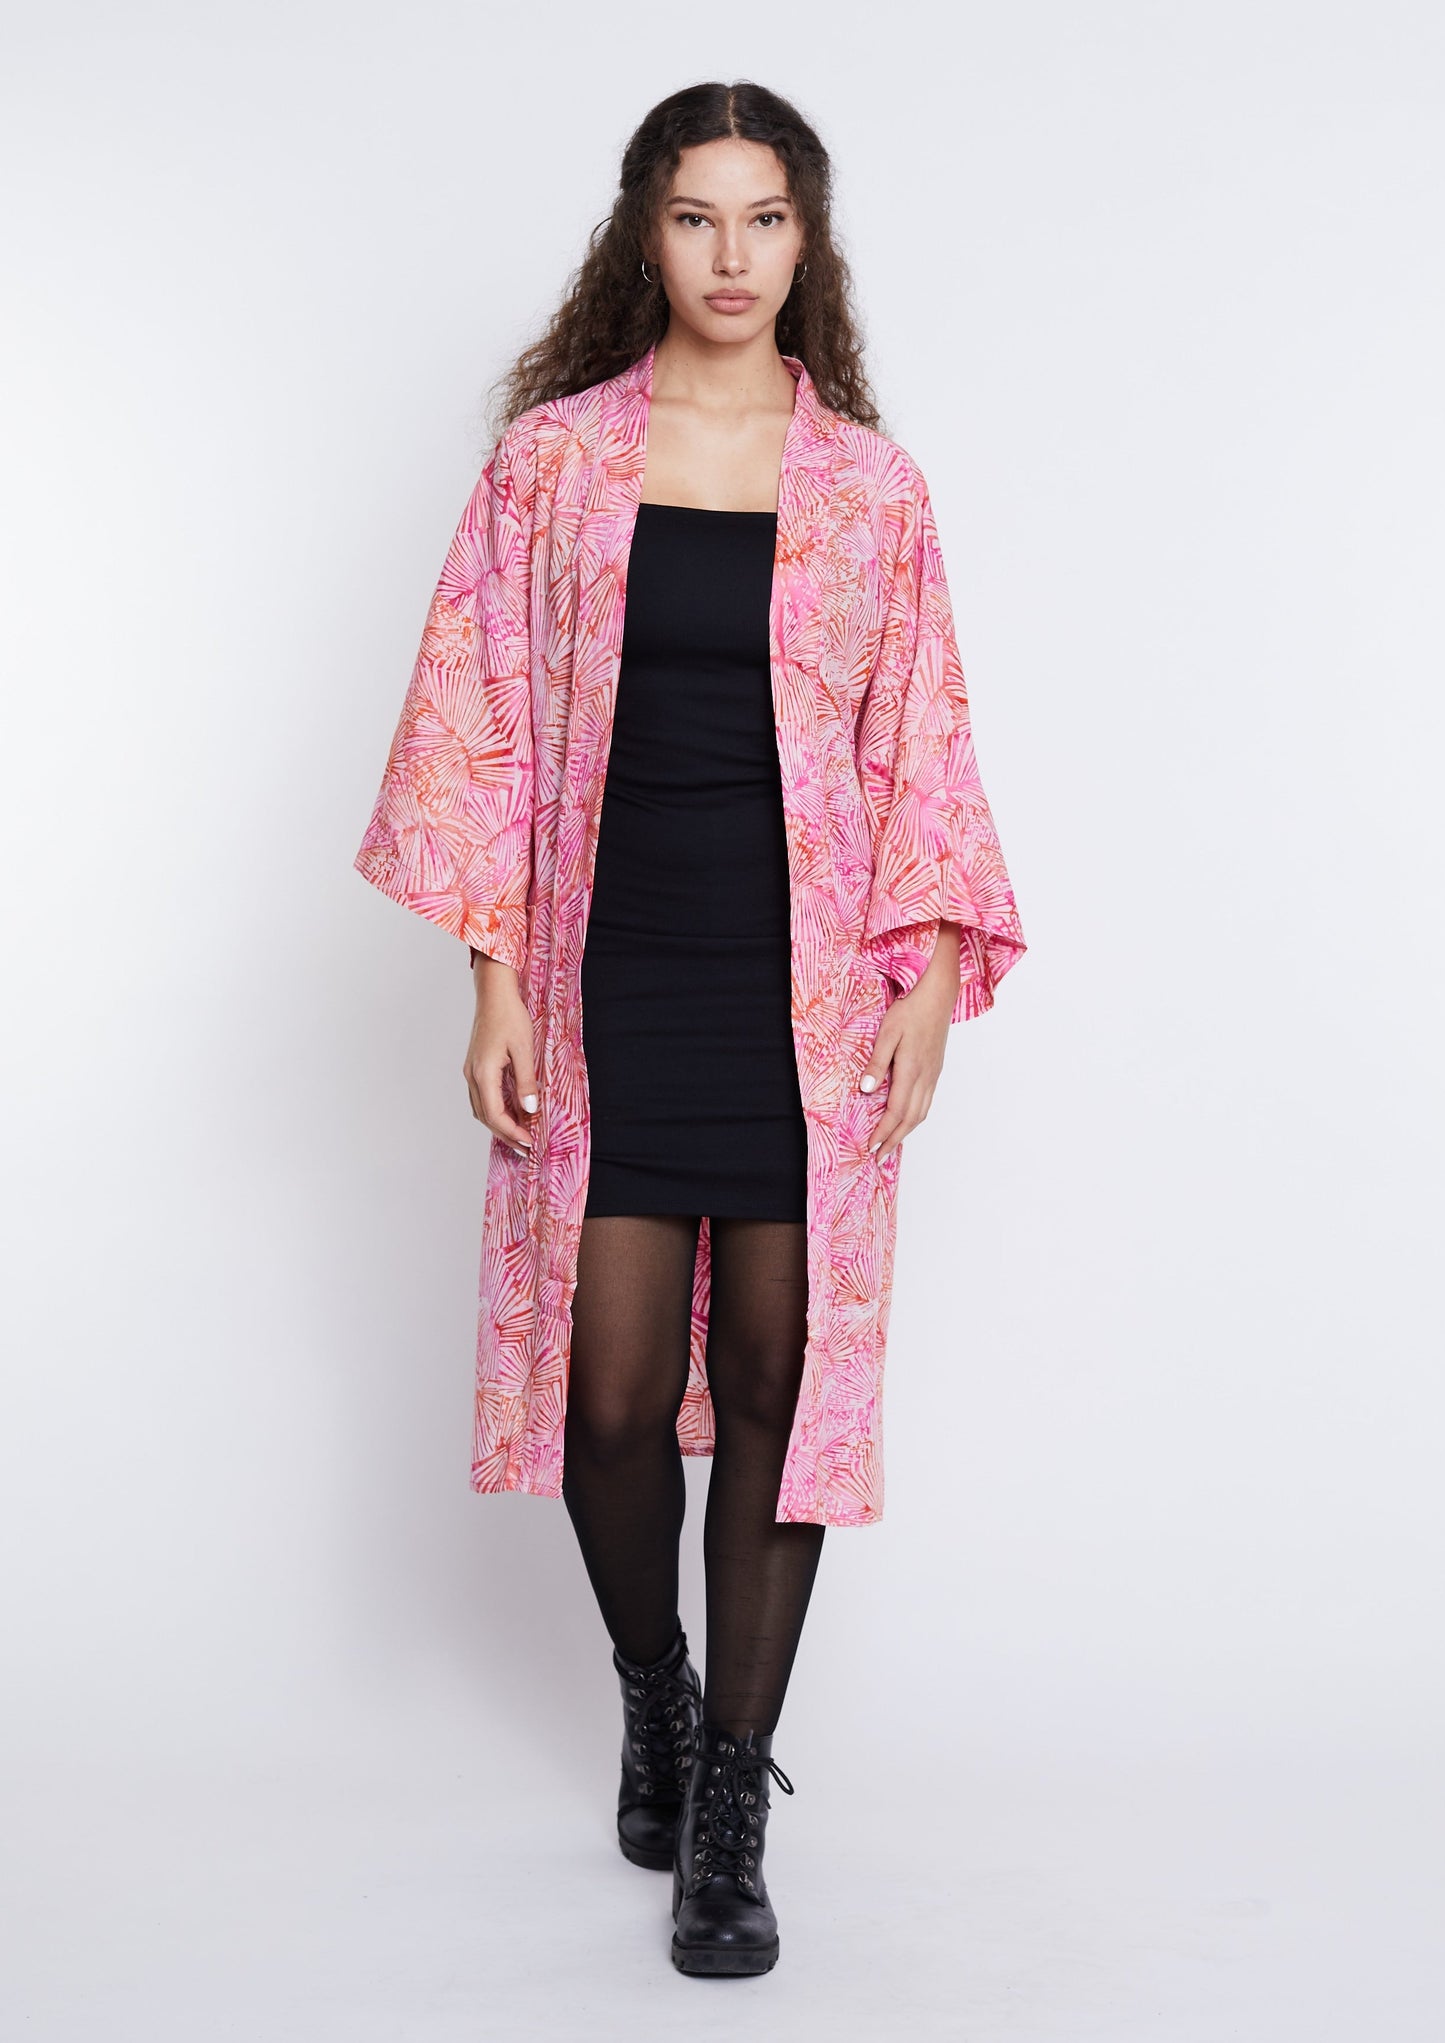 Langer Light-Pink handmade Kimono